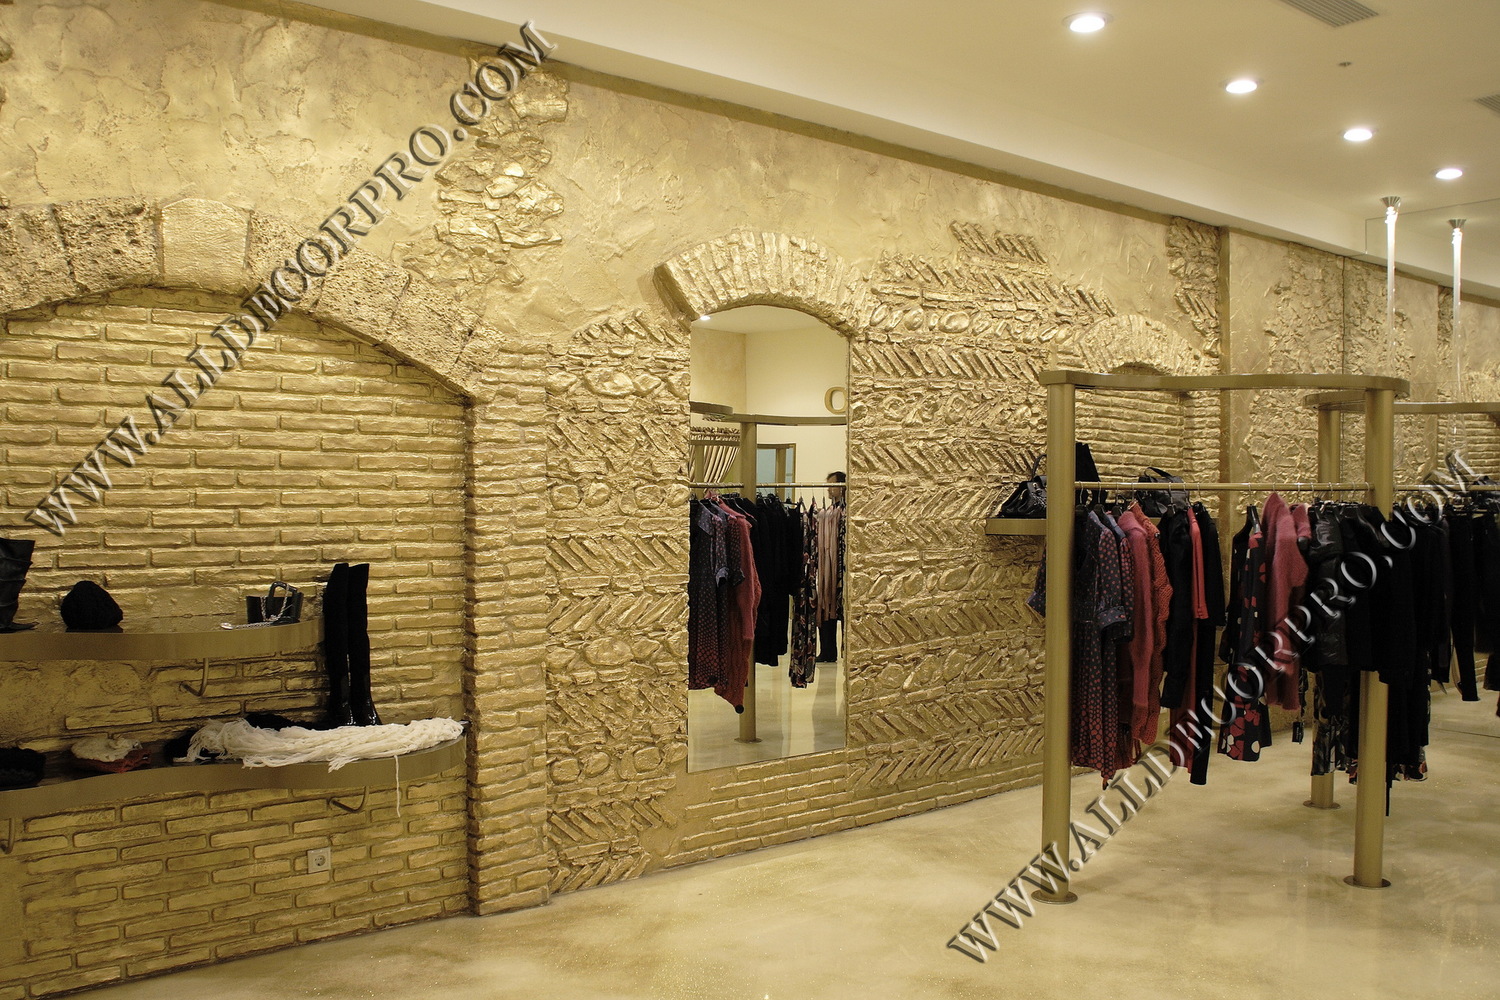 Стены декорированные венецианской штукатуркой имитирующей каменную кладку